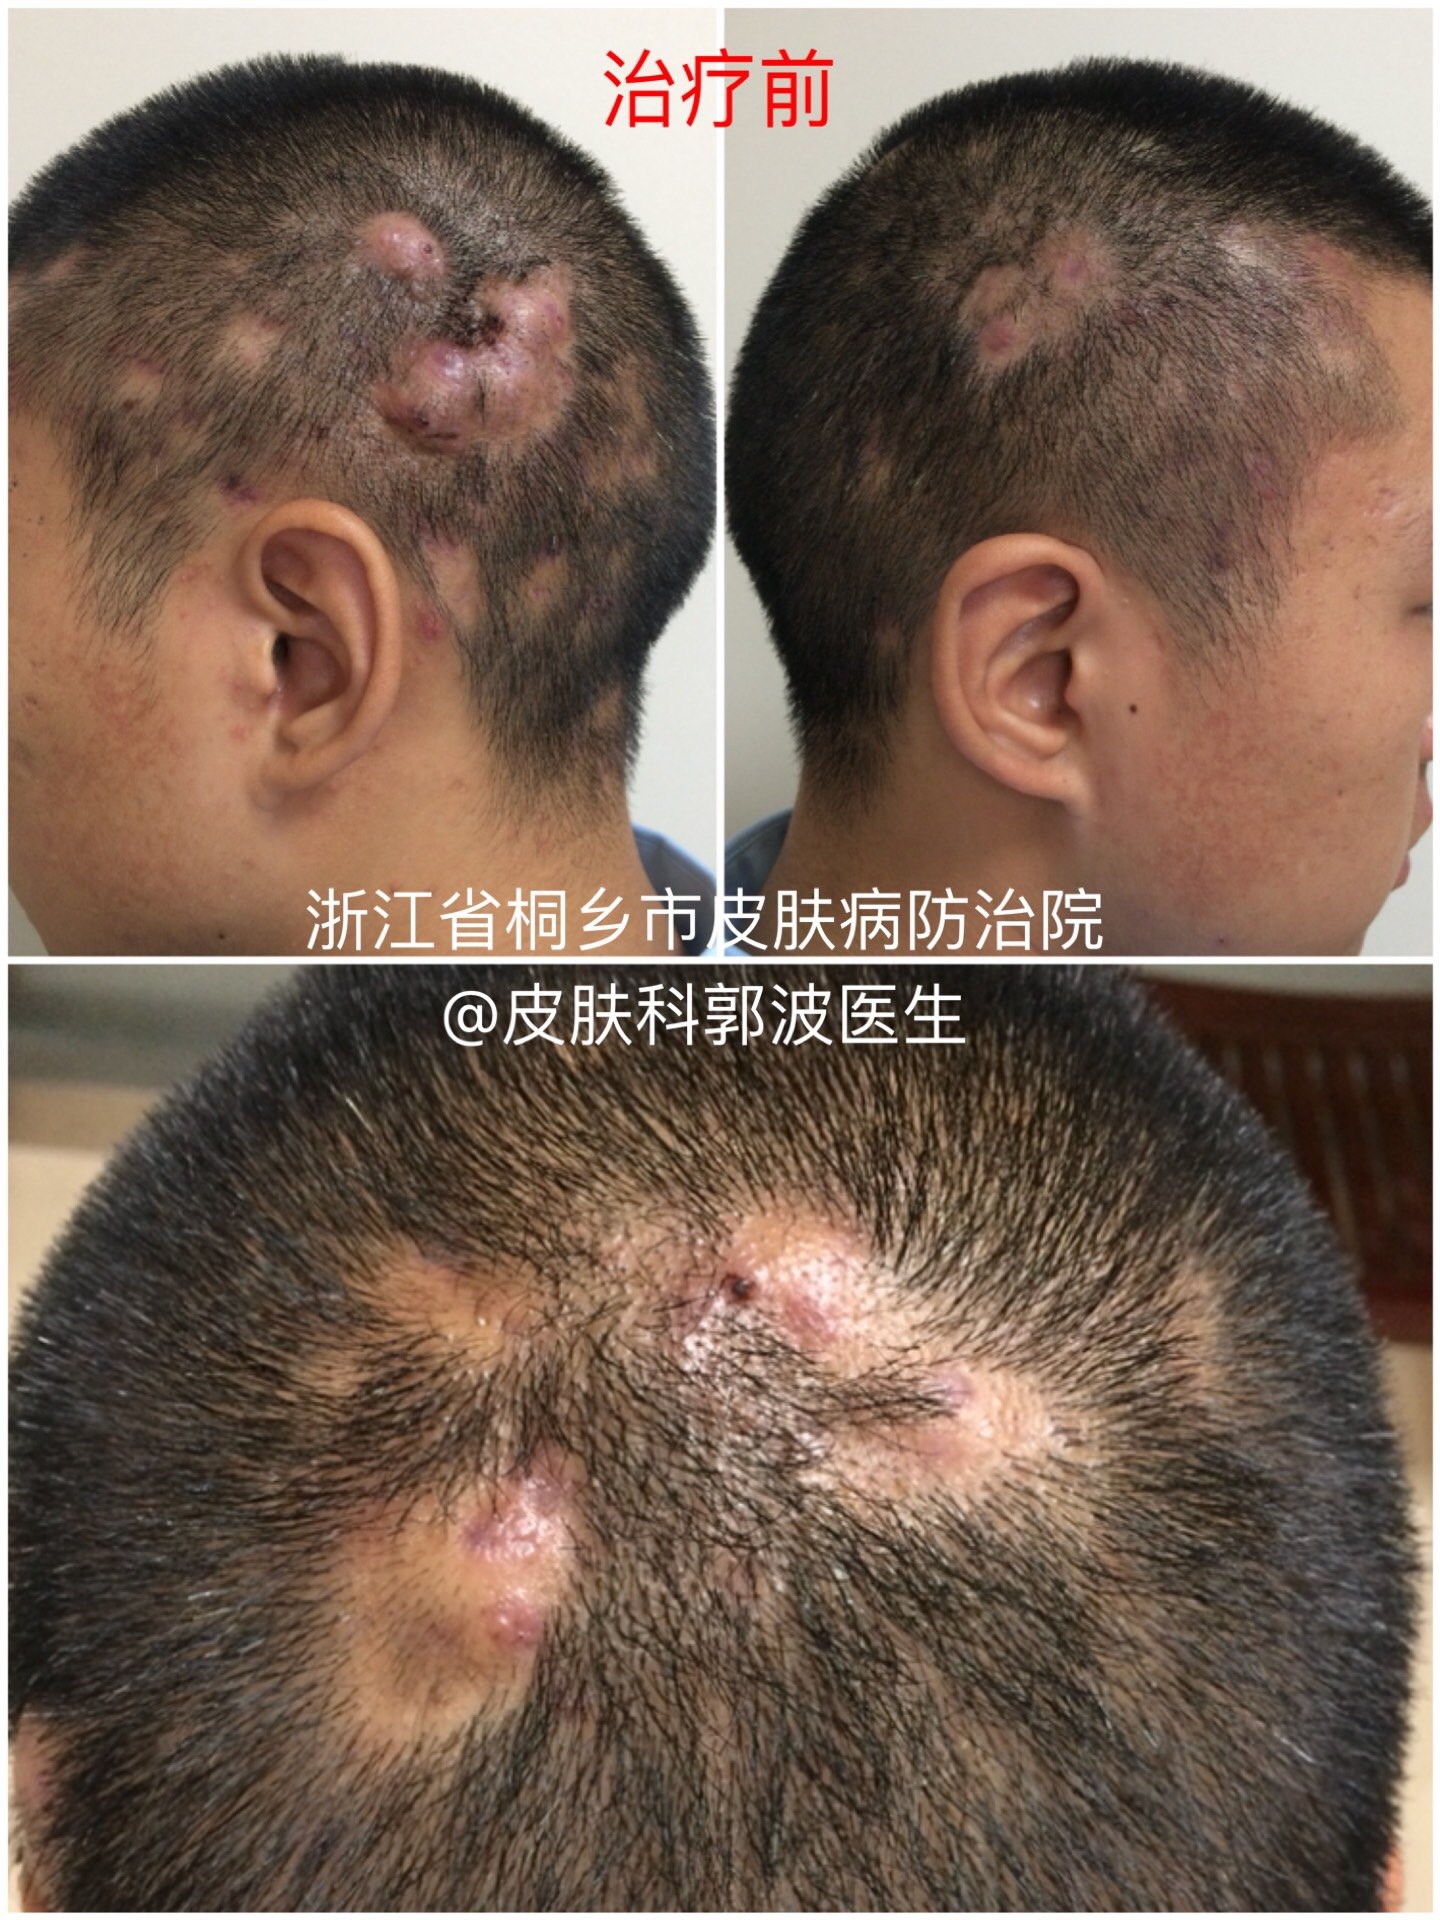 临床病例展示:头部脓肿性穿凿性毛囊周围炎